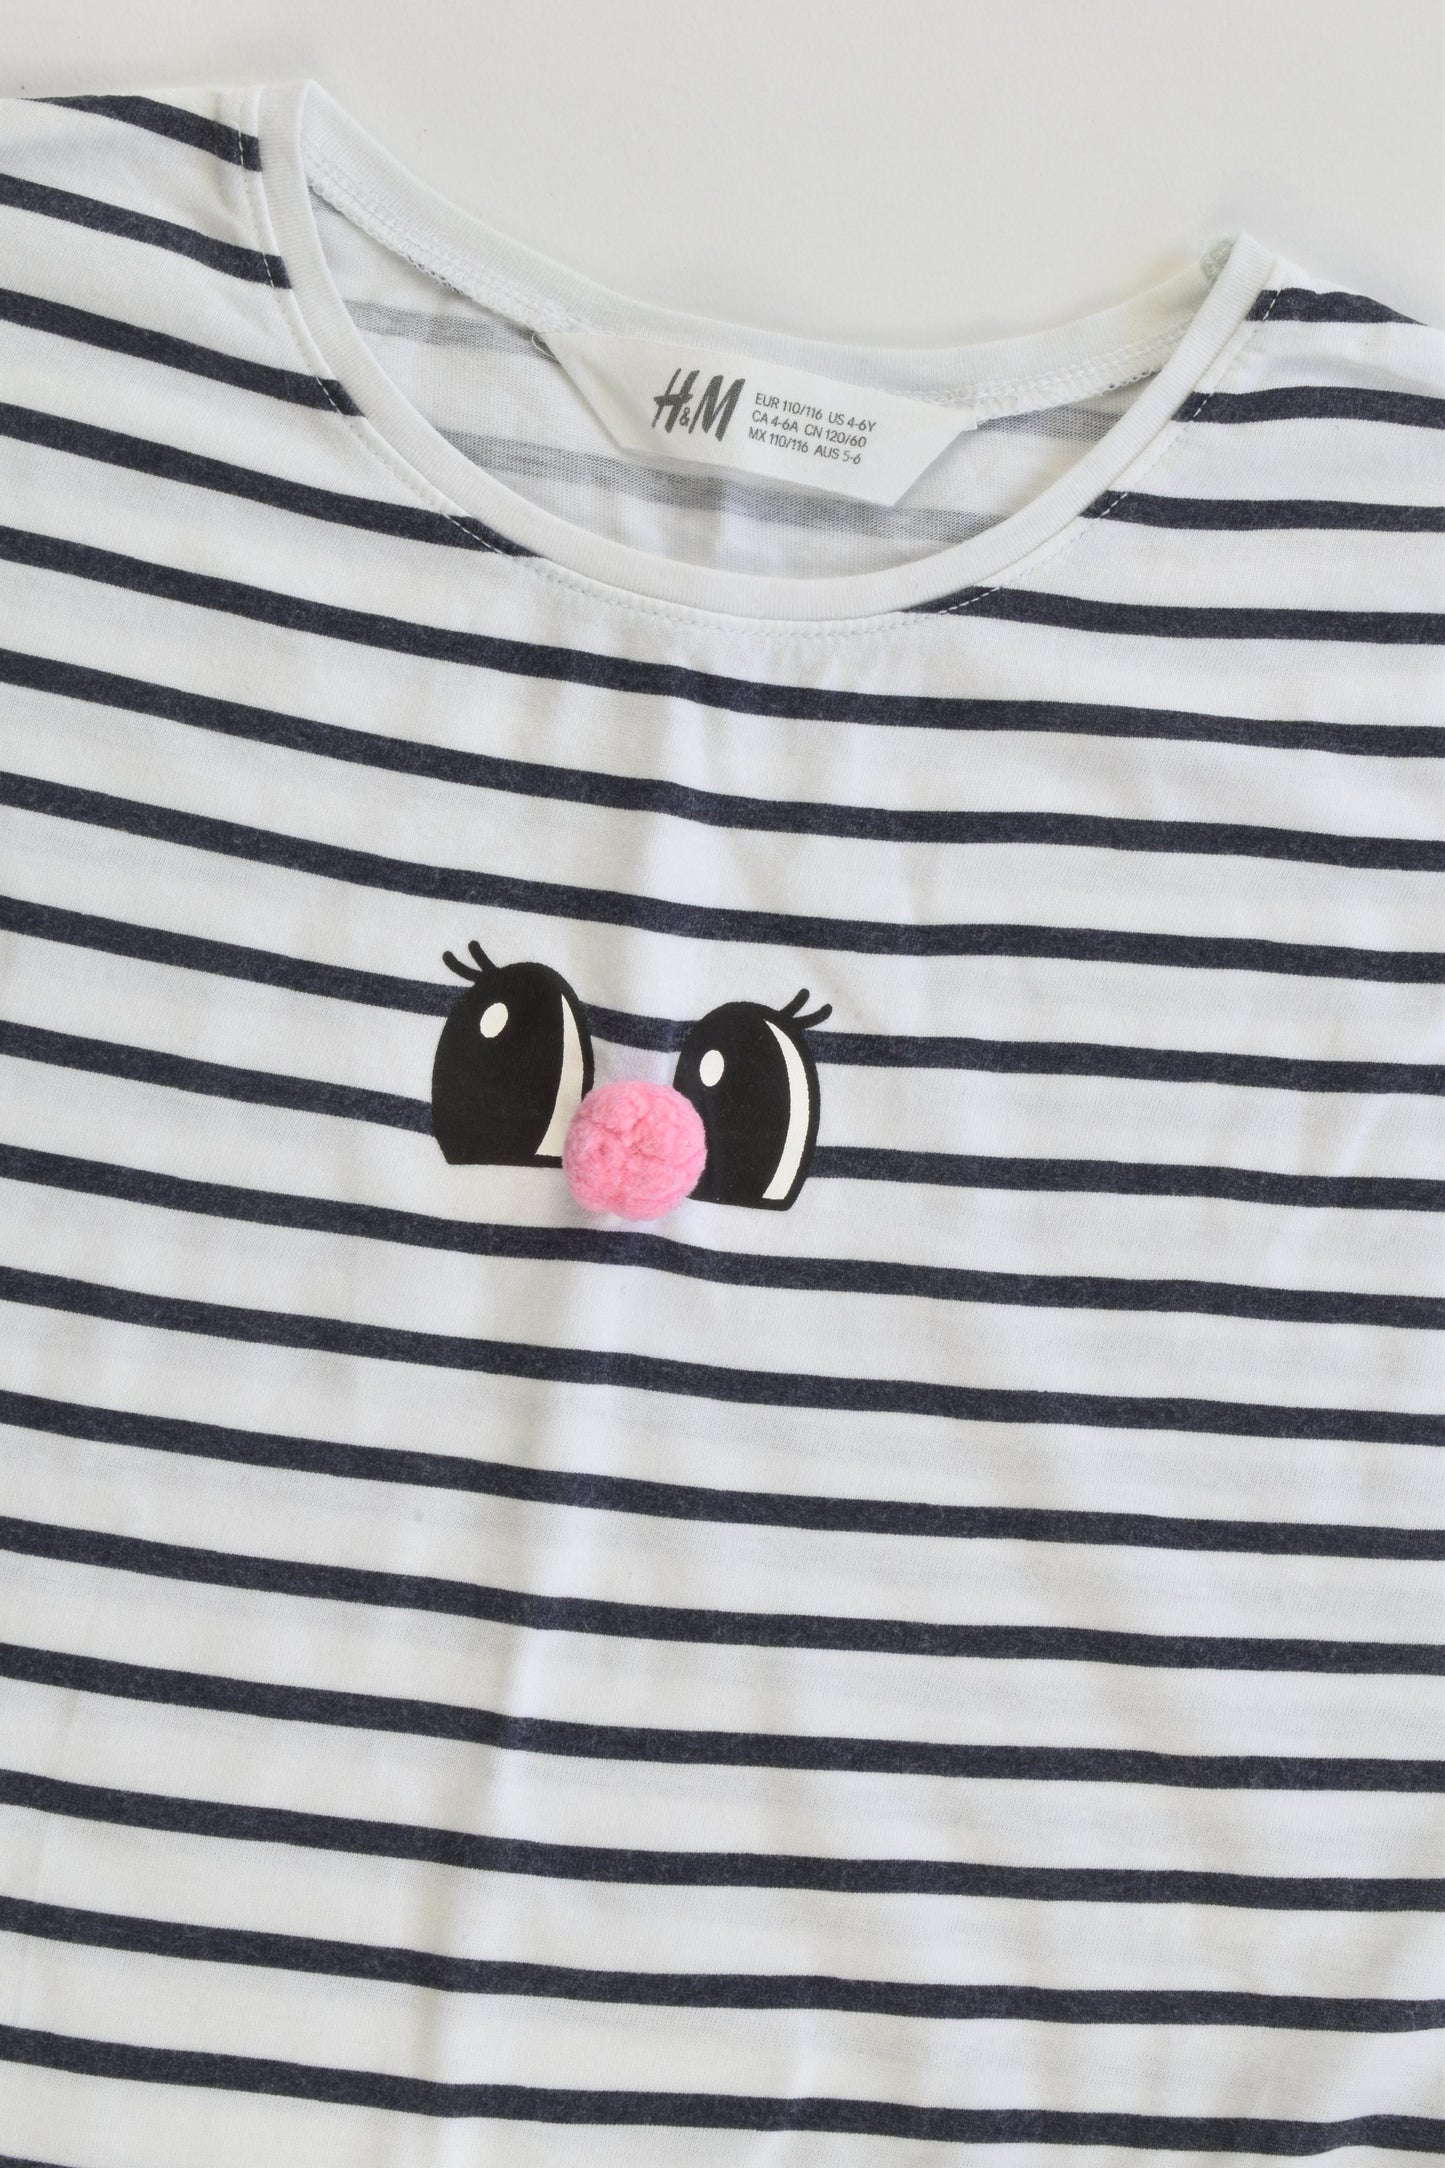 H&M Size 5-6 (110/116 cm) Striped Pom Pom Nose T-shirt